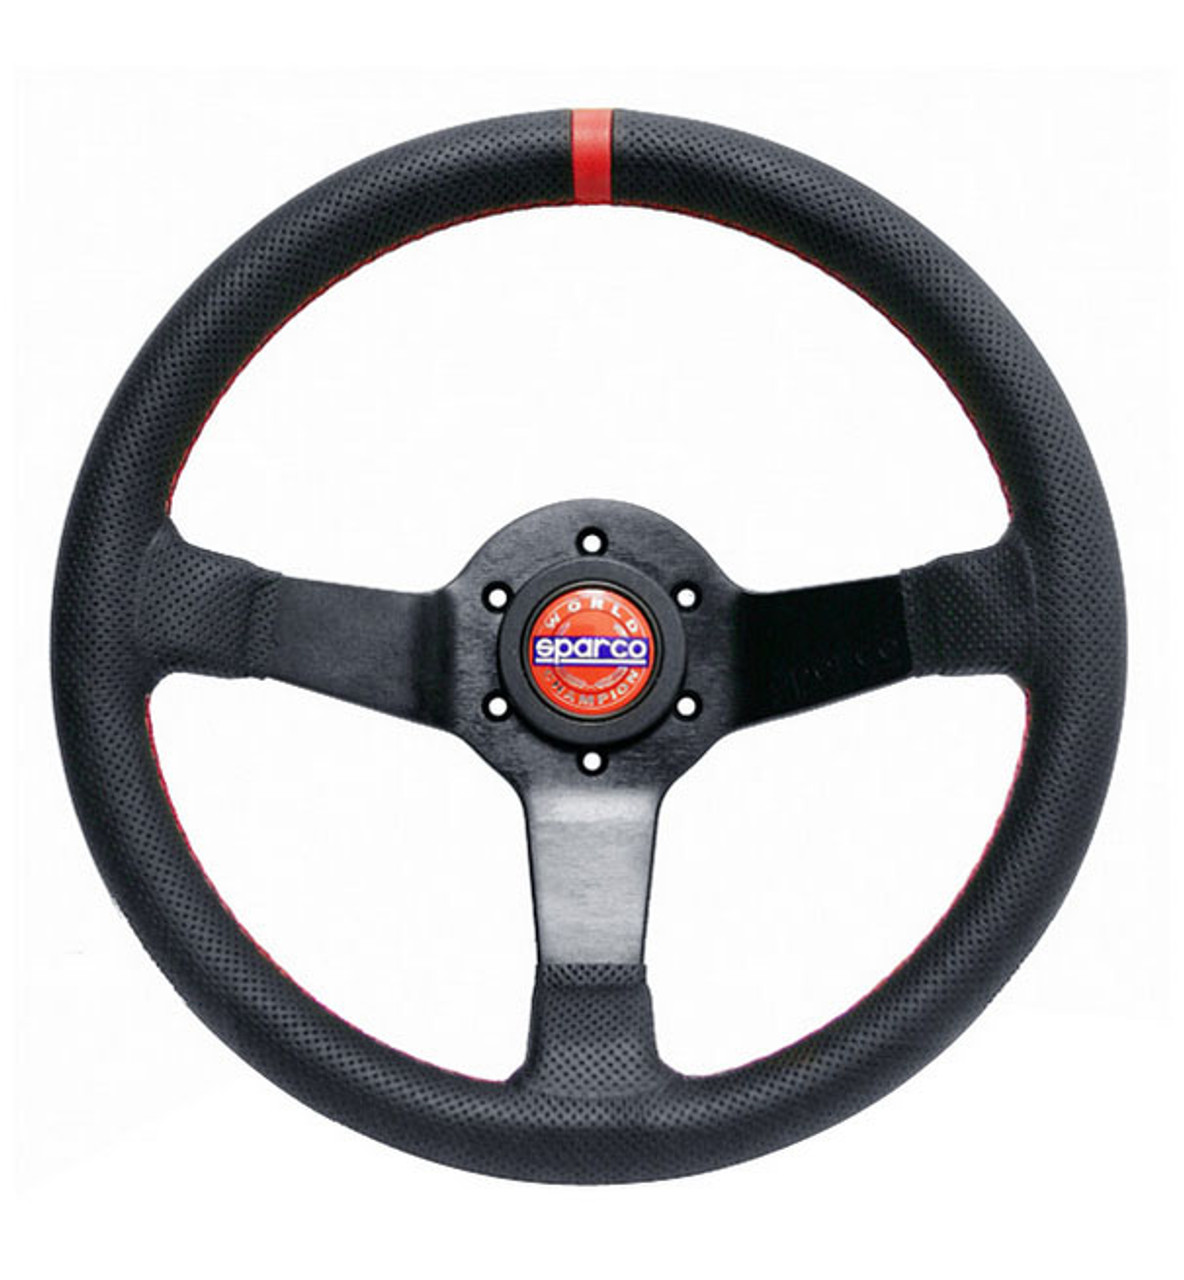 File:Sparco steering wheel.jpg - Wikipedia